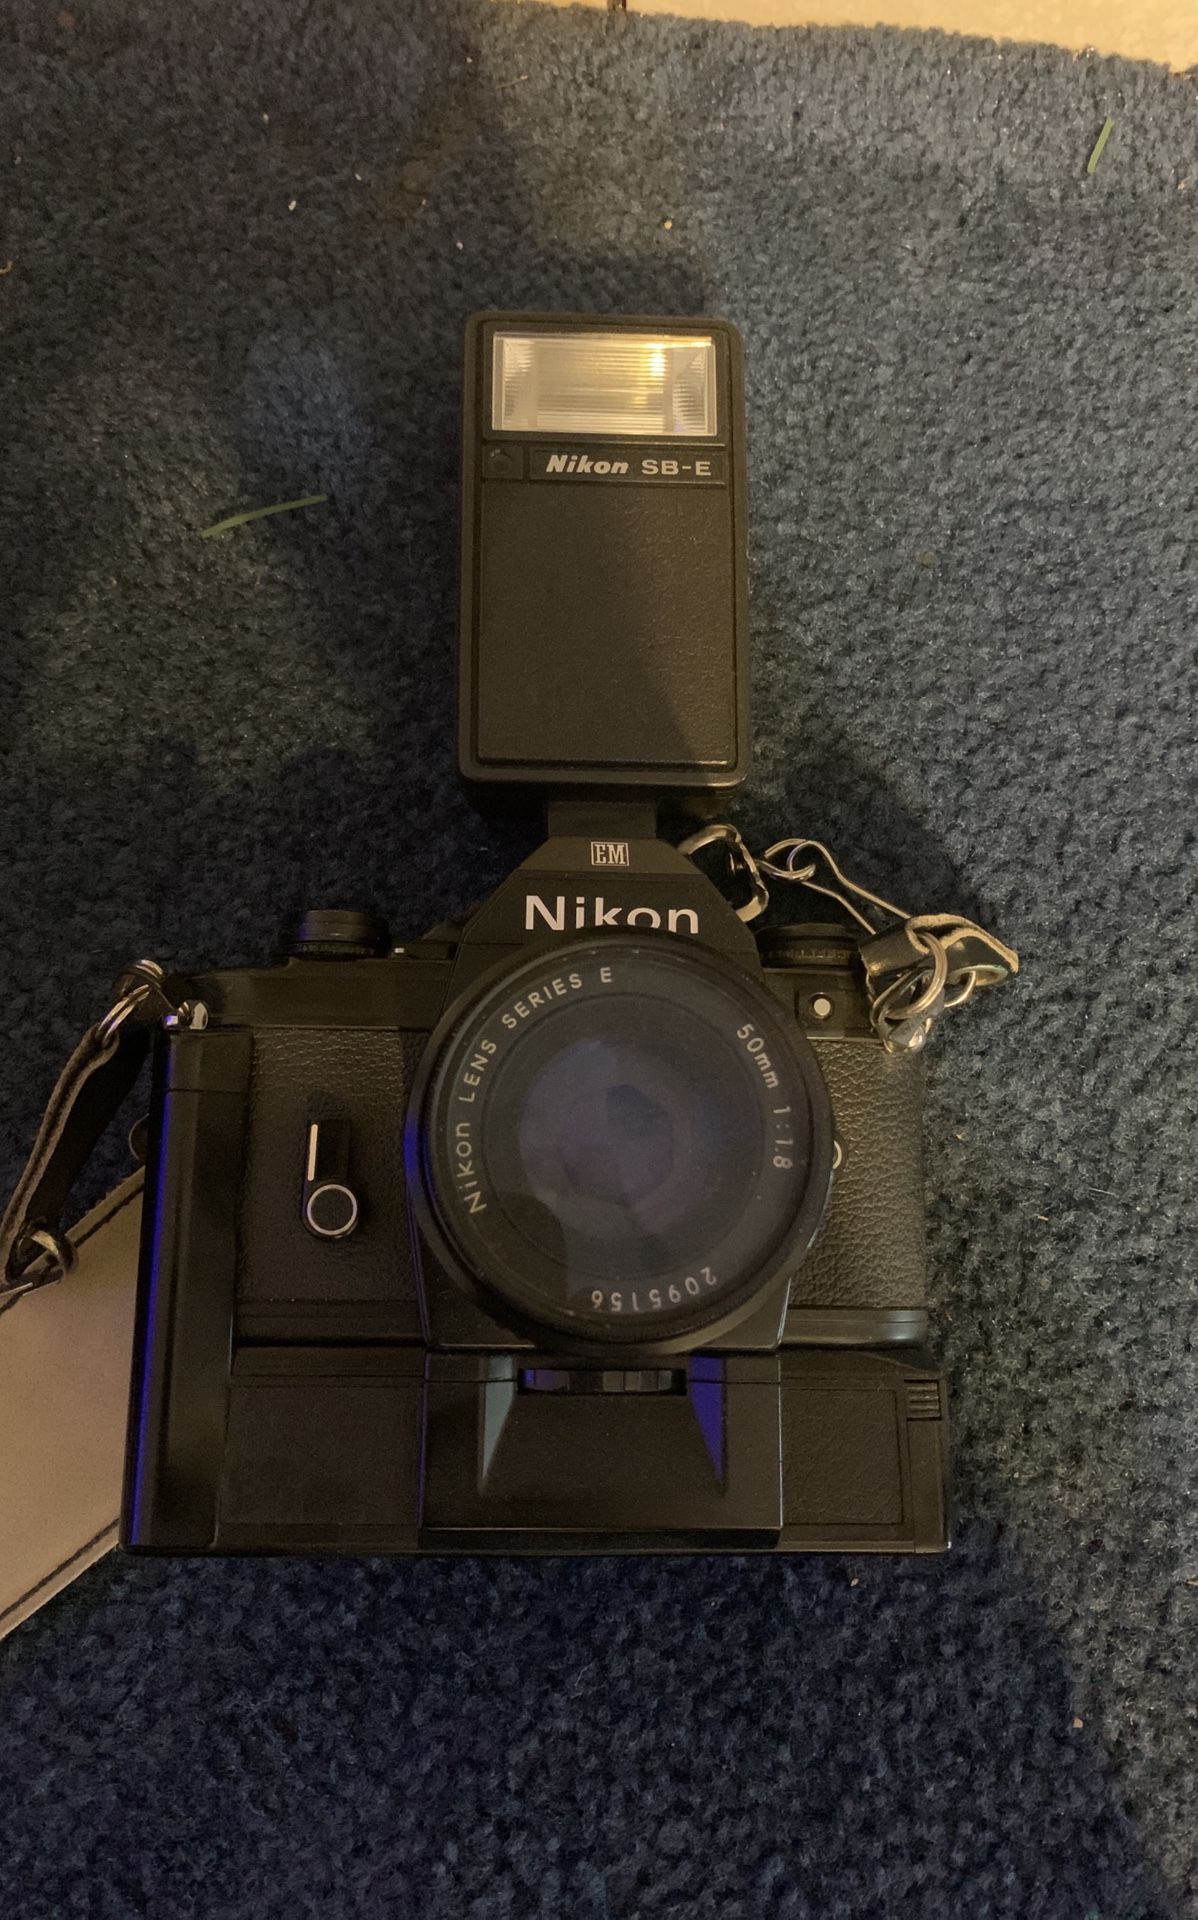 Nikon Camera With Attachments And Tripod